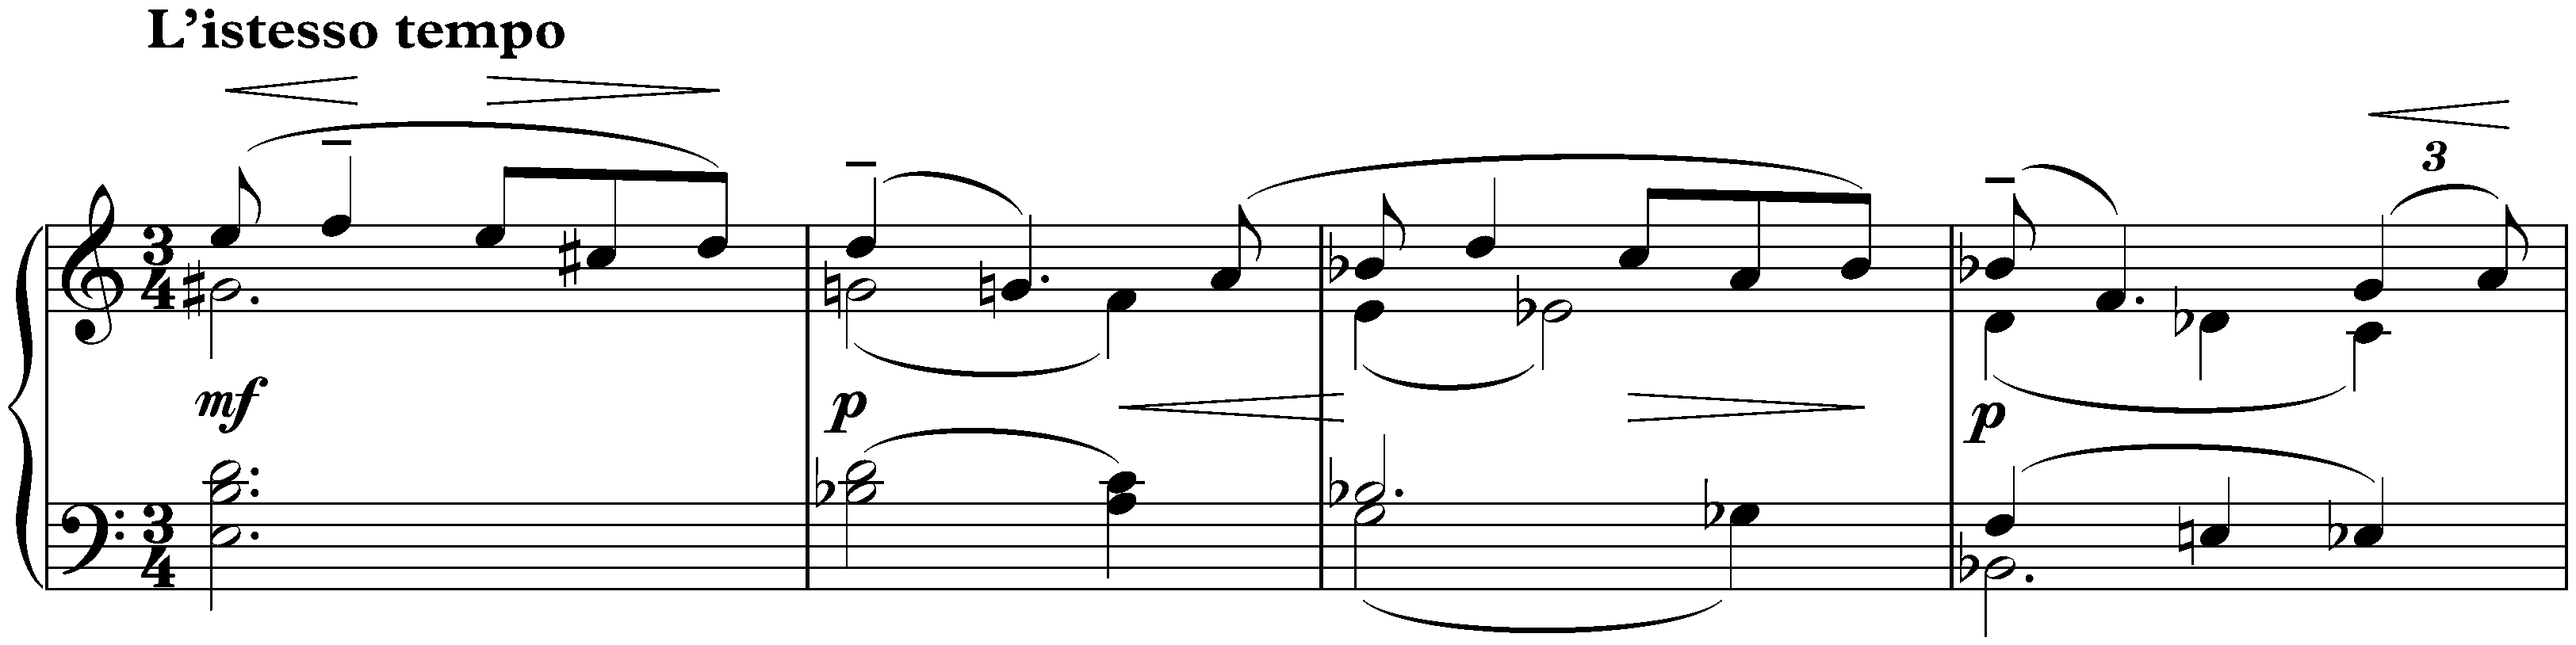 Sonata no. 2 in B-flat minor, op. 36 (first version); 3. L’istesso tempo – Allegro molto